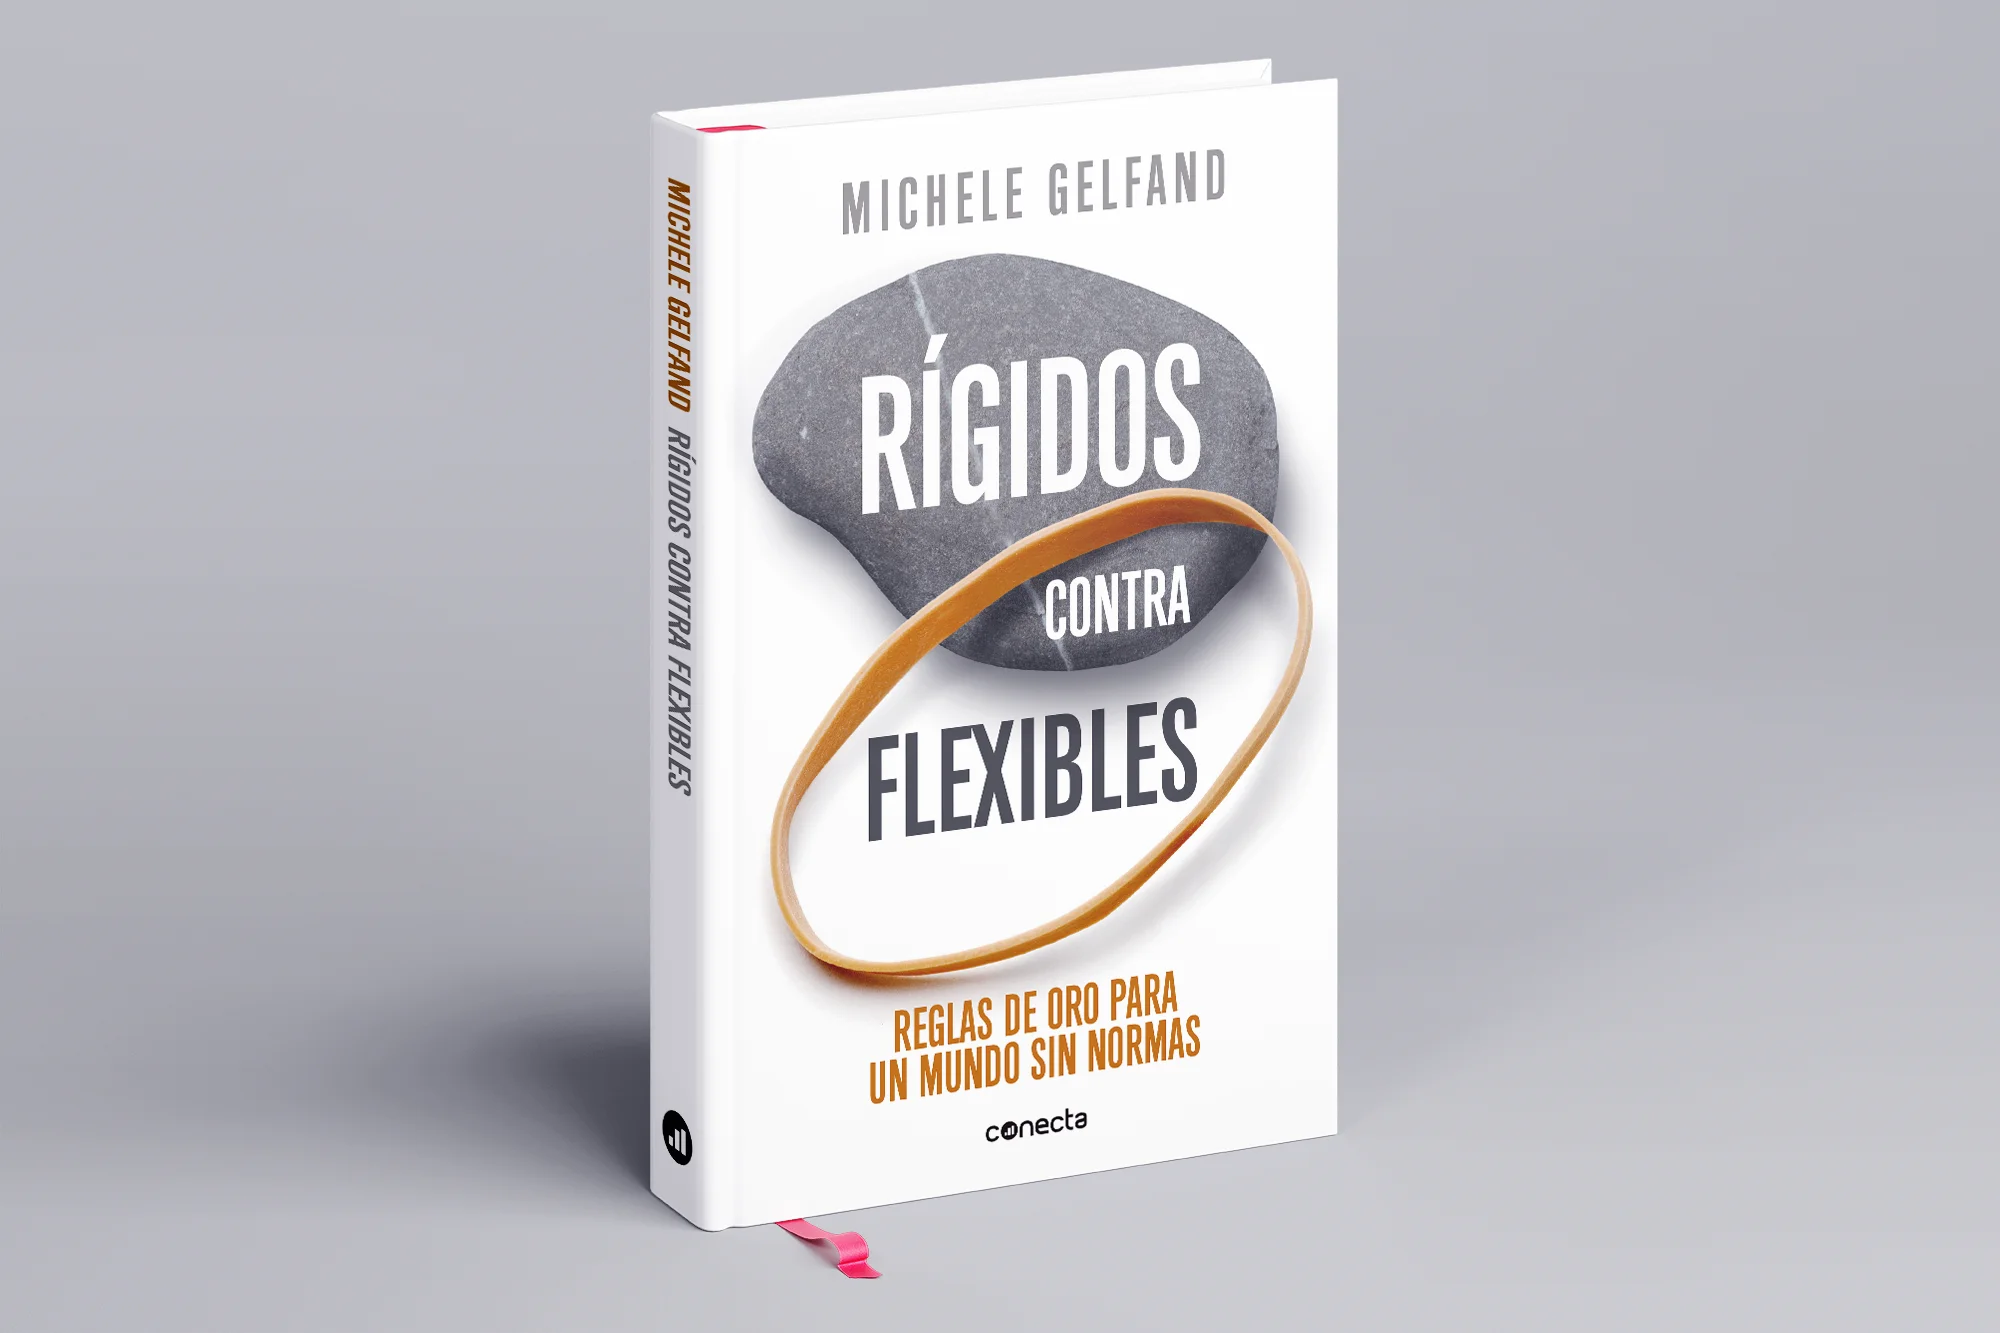 Diseño editorial cubierta libro "Rígidos contra flexibles"